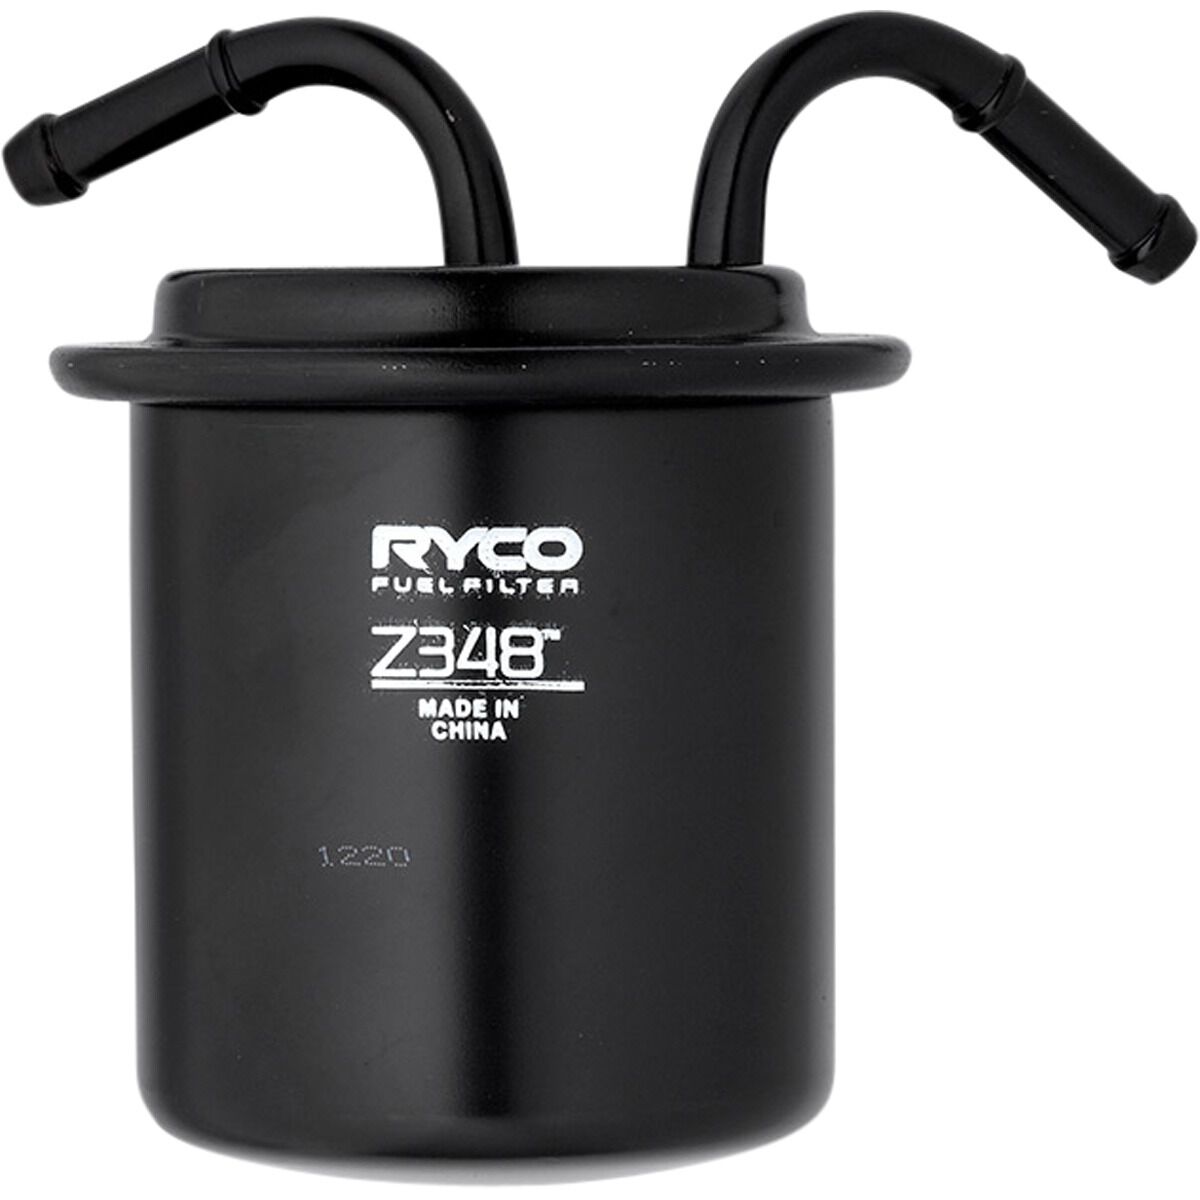 Ryco Fuel Filter - Z348, , scaau_hi-res